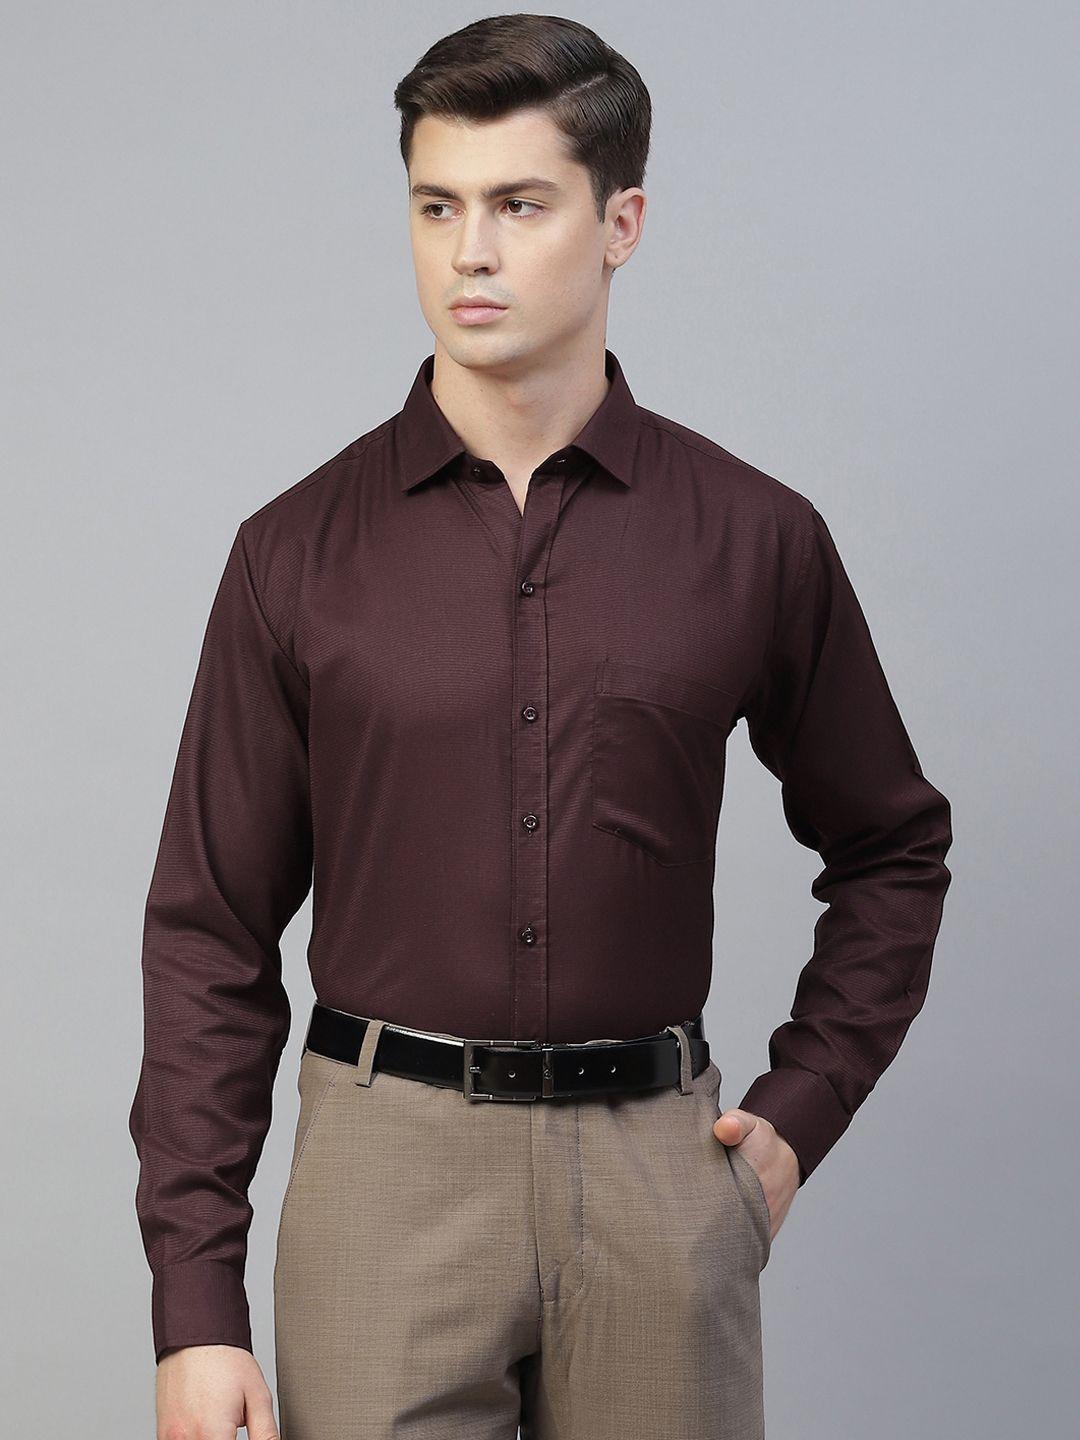 manq men maroon smart formal shirt